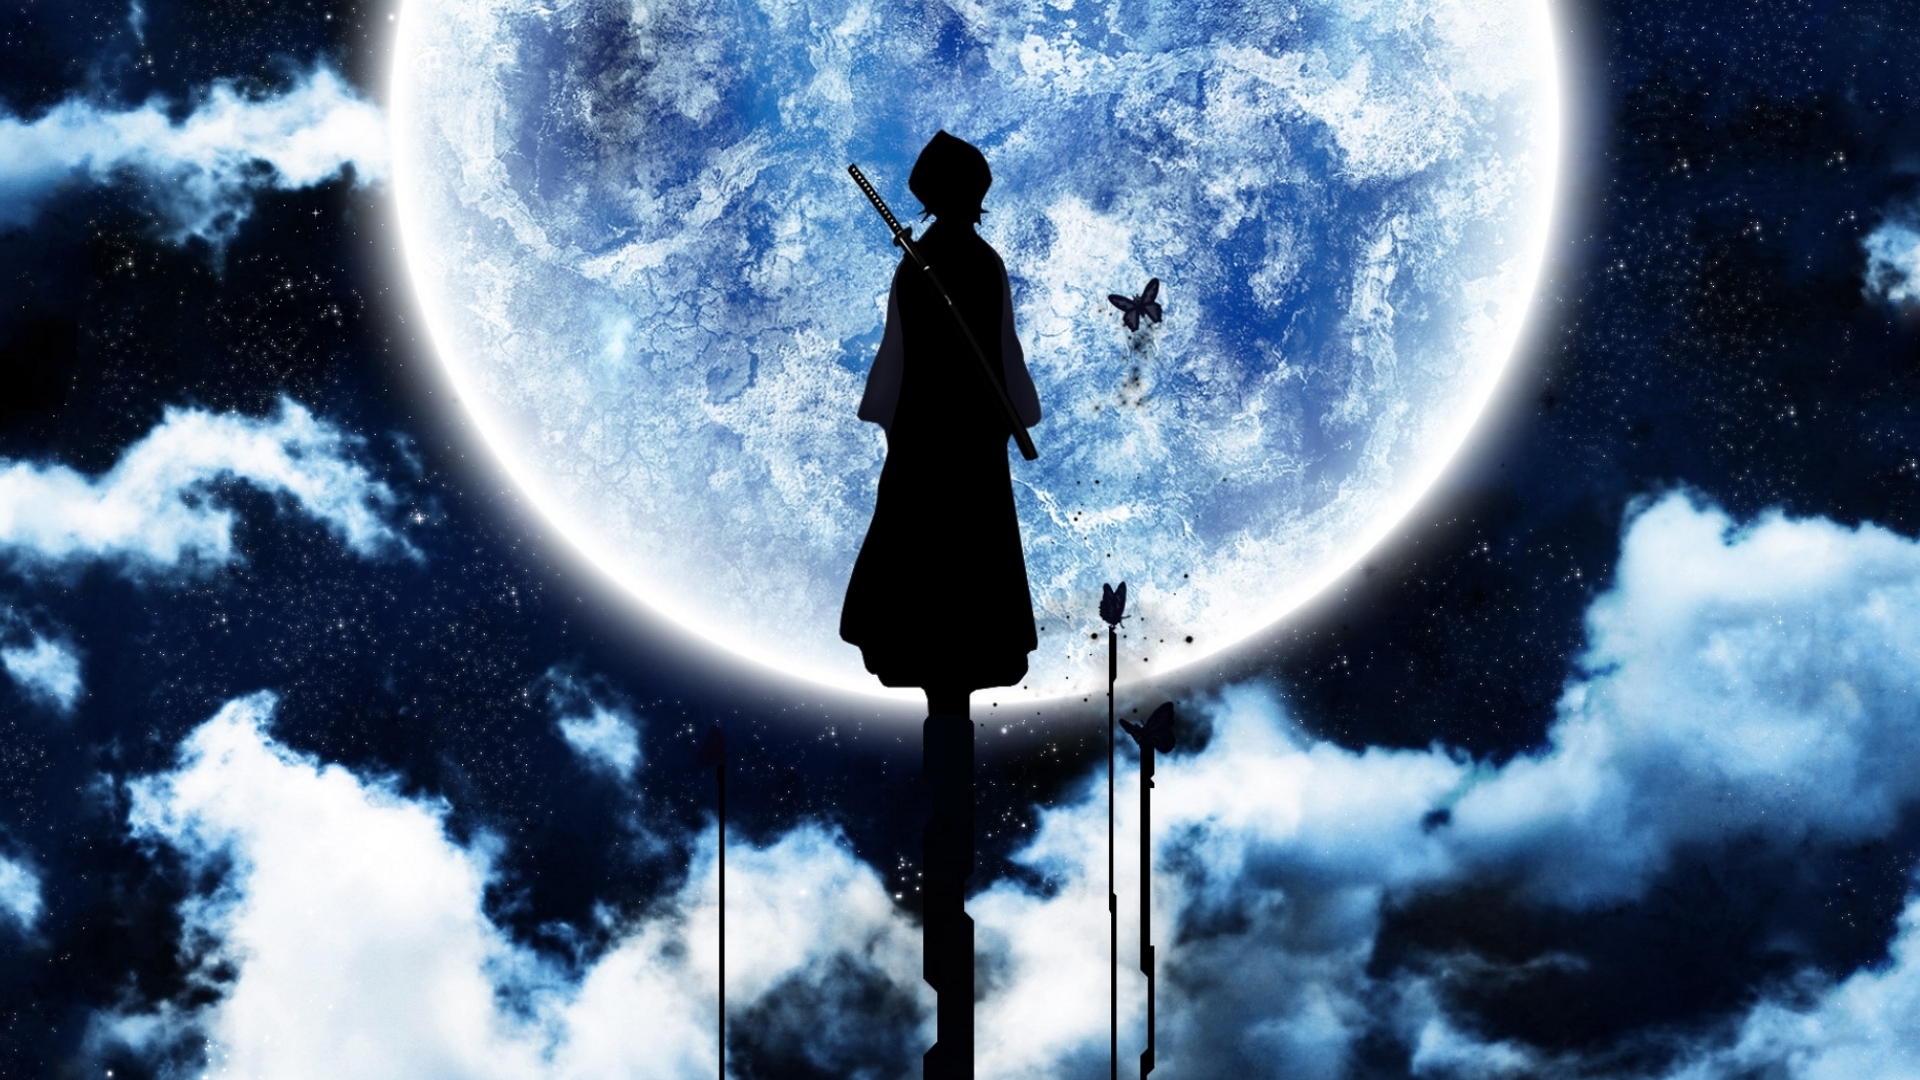 Descarga gratuita de fondo de pantalla para móvil de Luna, Anime.